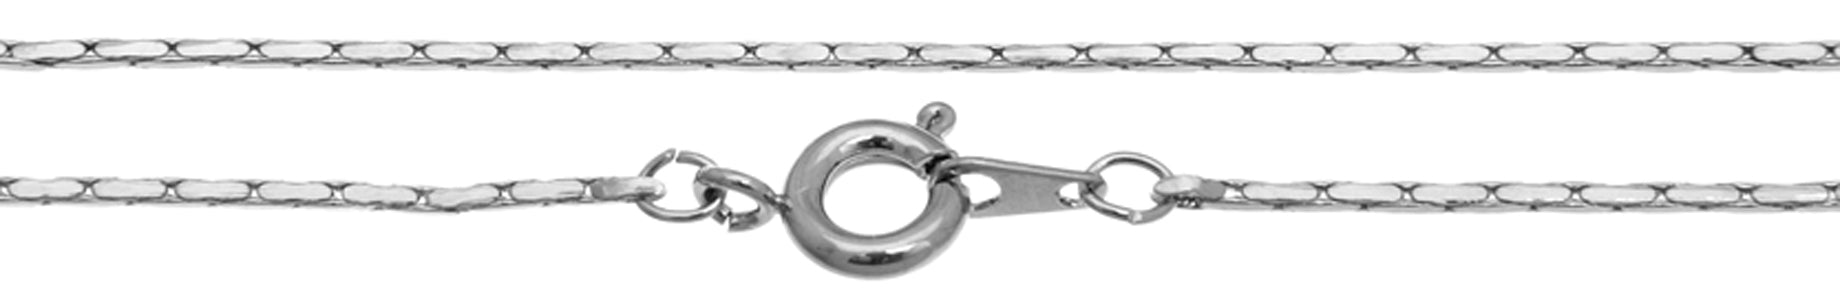 Neckchain Serpentine With Spring Ring